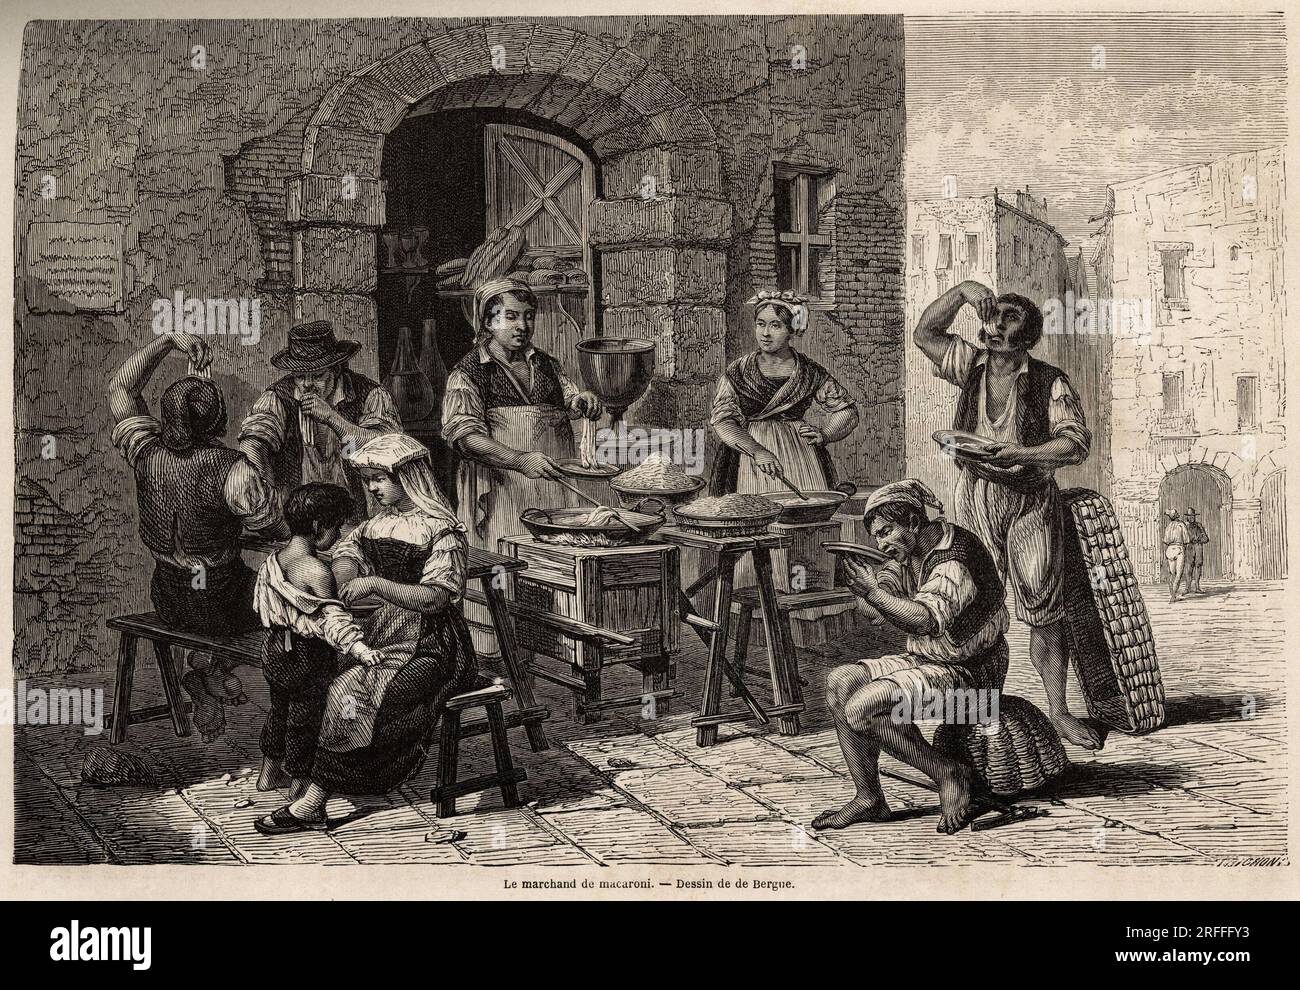 Le marchand de macaroni, dessin de Bergue, pour illustrateur Naples et les napolitains, en 1861, par Marc Monnier (1829-1885). Gravure dans 'le tour du monde' 1861. Banque D'Images